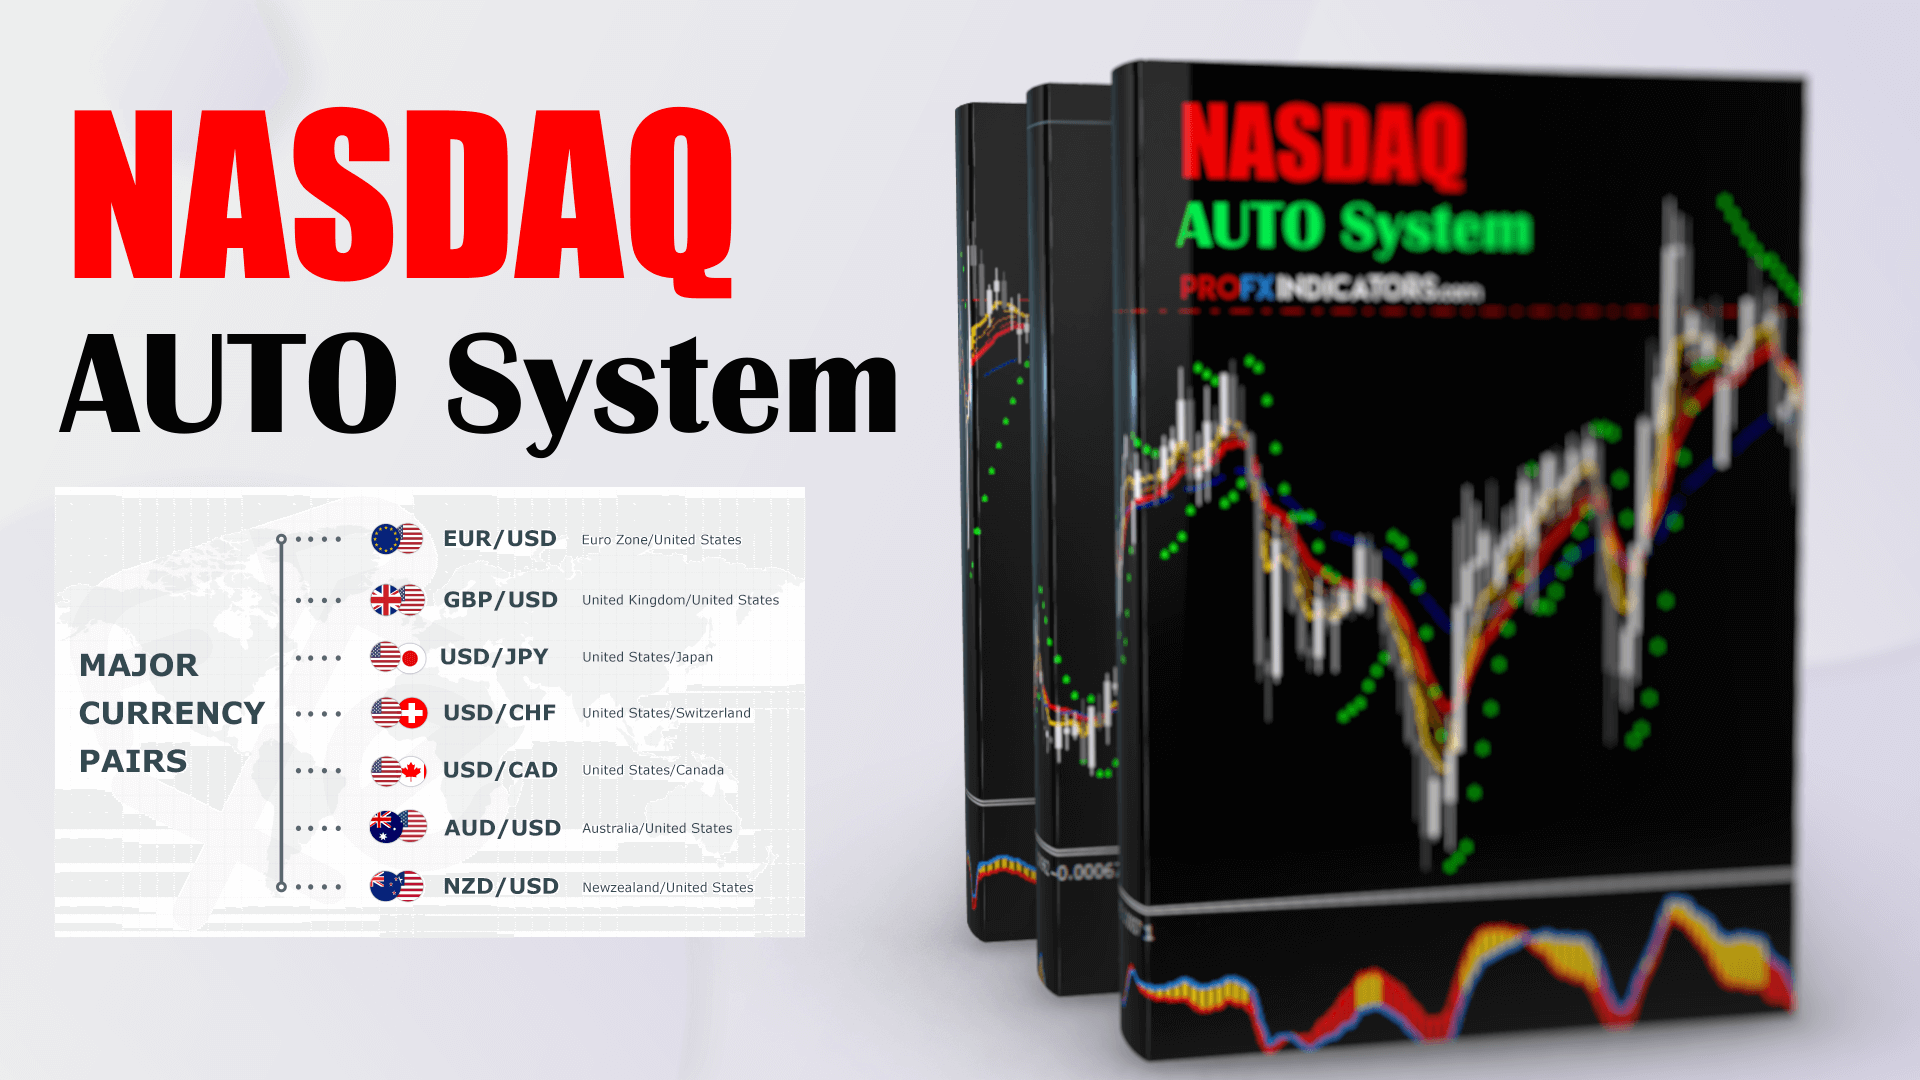 Nasdaq Auto System